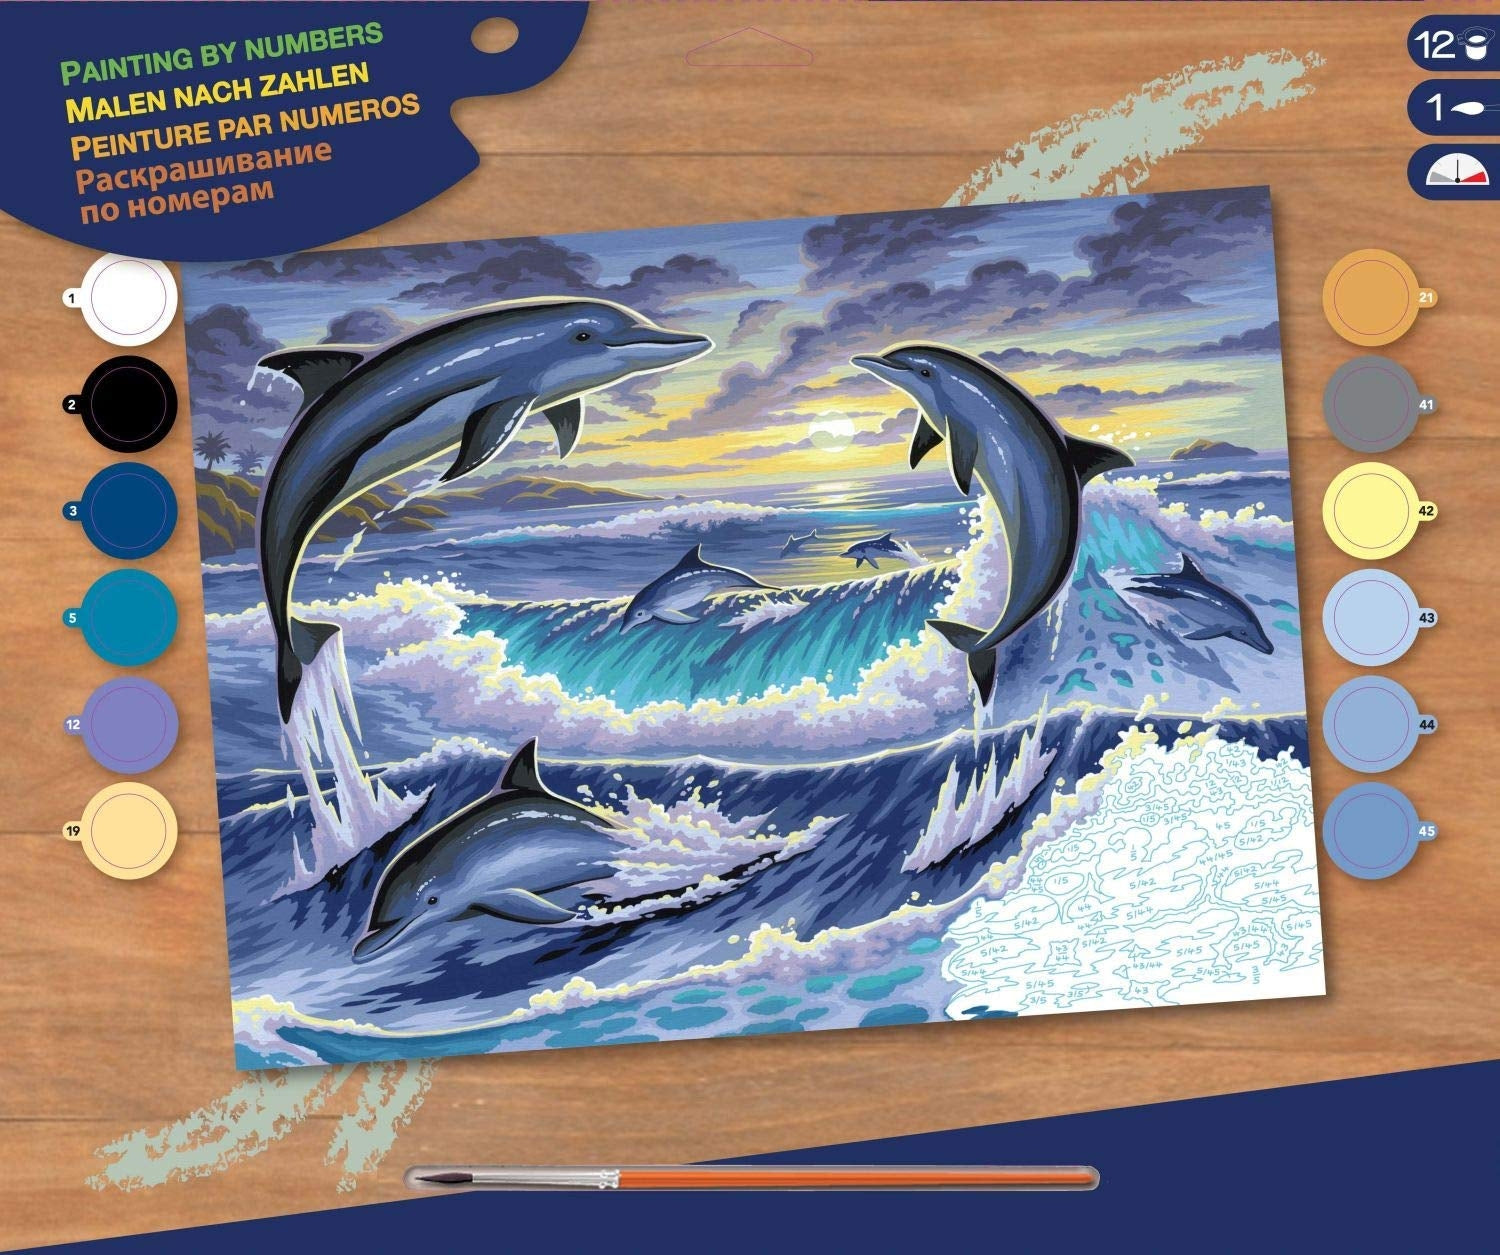 KSG - Grande pittura per numero - Dolphin Sunrise